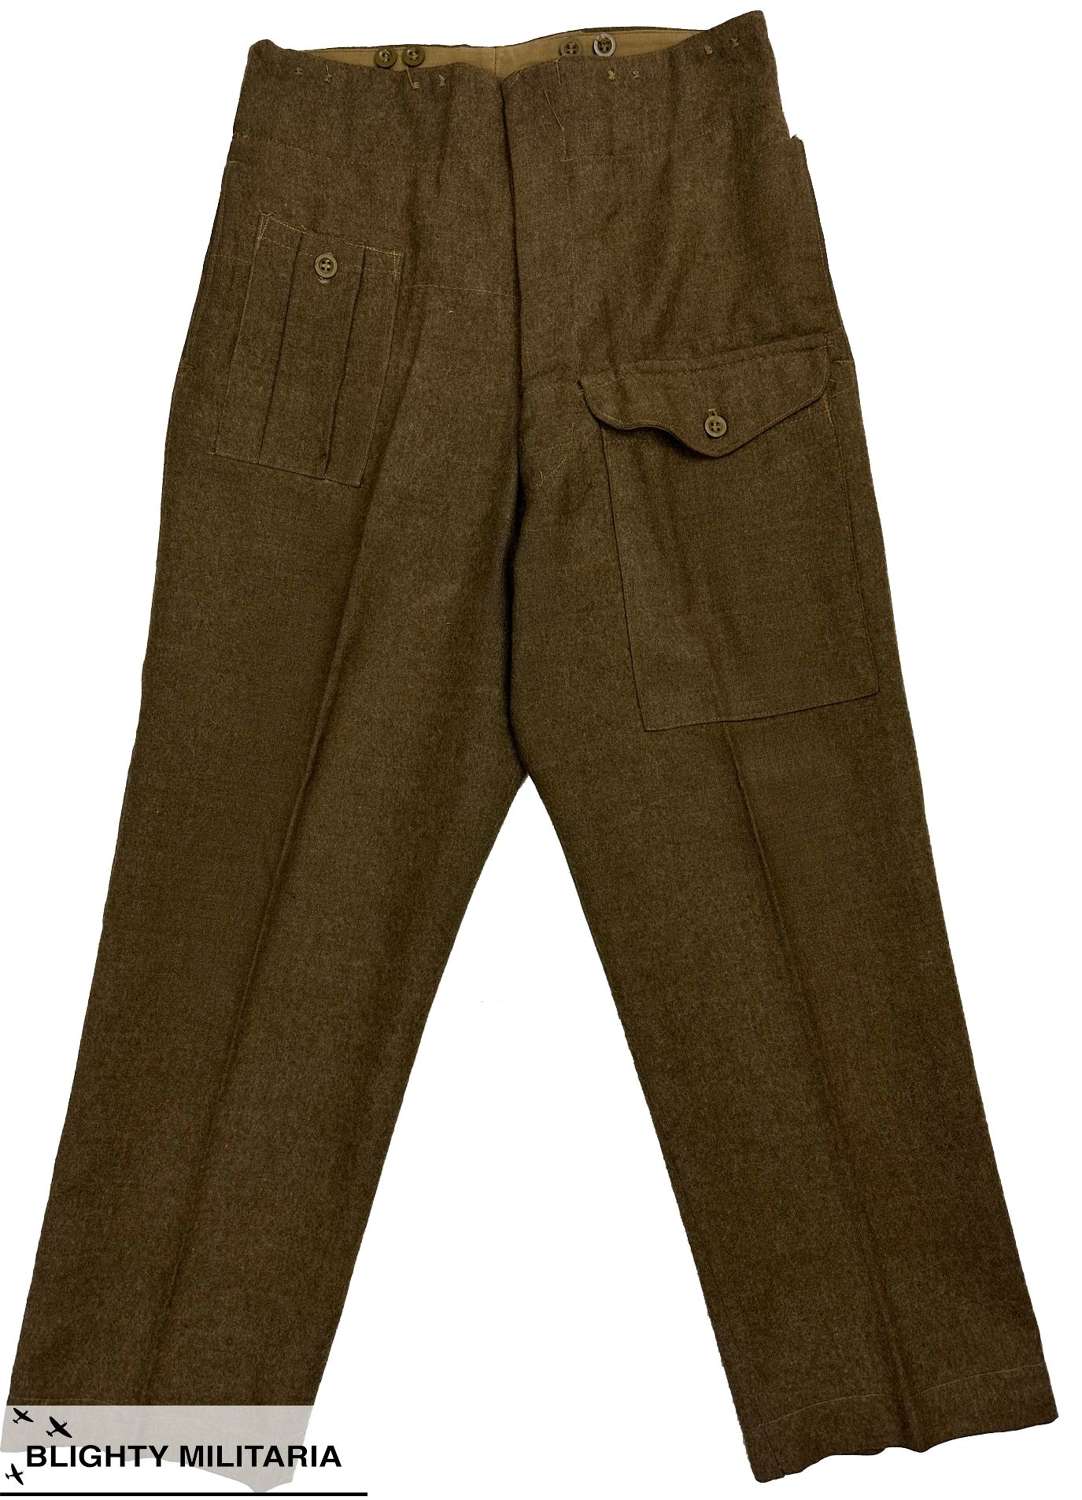 Original 1946 Pattern British Army Battledress Trousers - Size 9 34x29